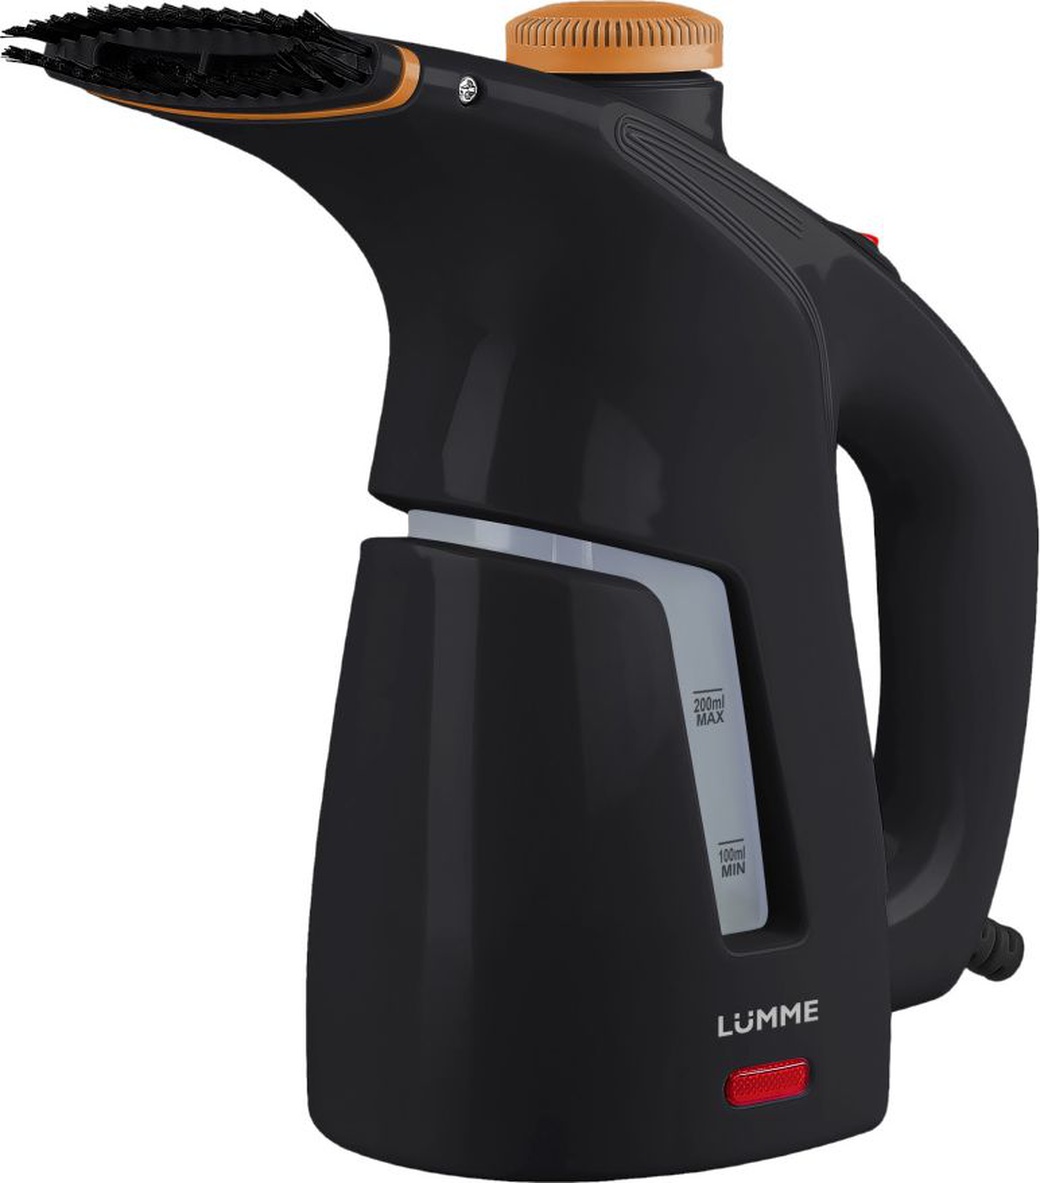 Ручной отпариватель для одежды LUMME LU-4001 черный агат фото